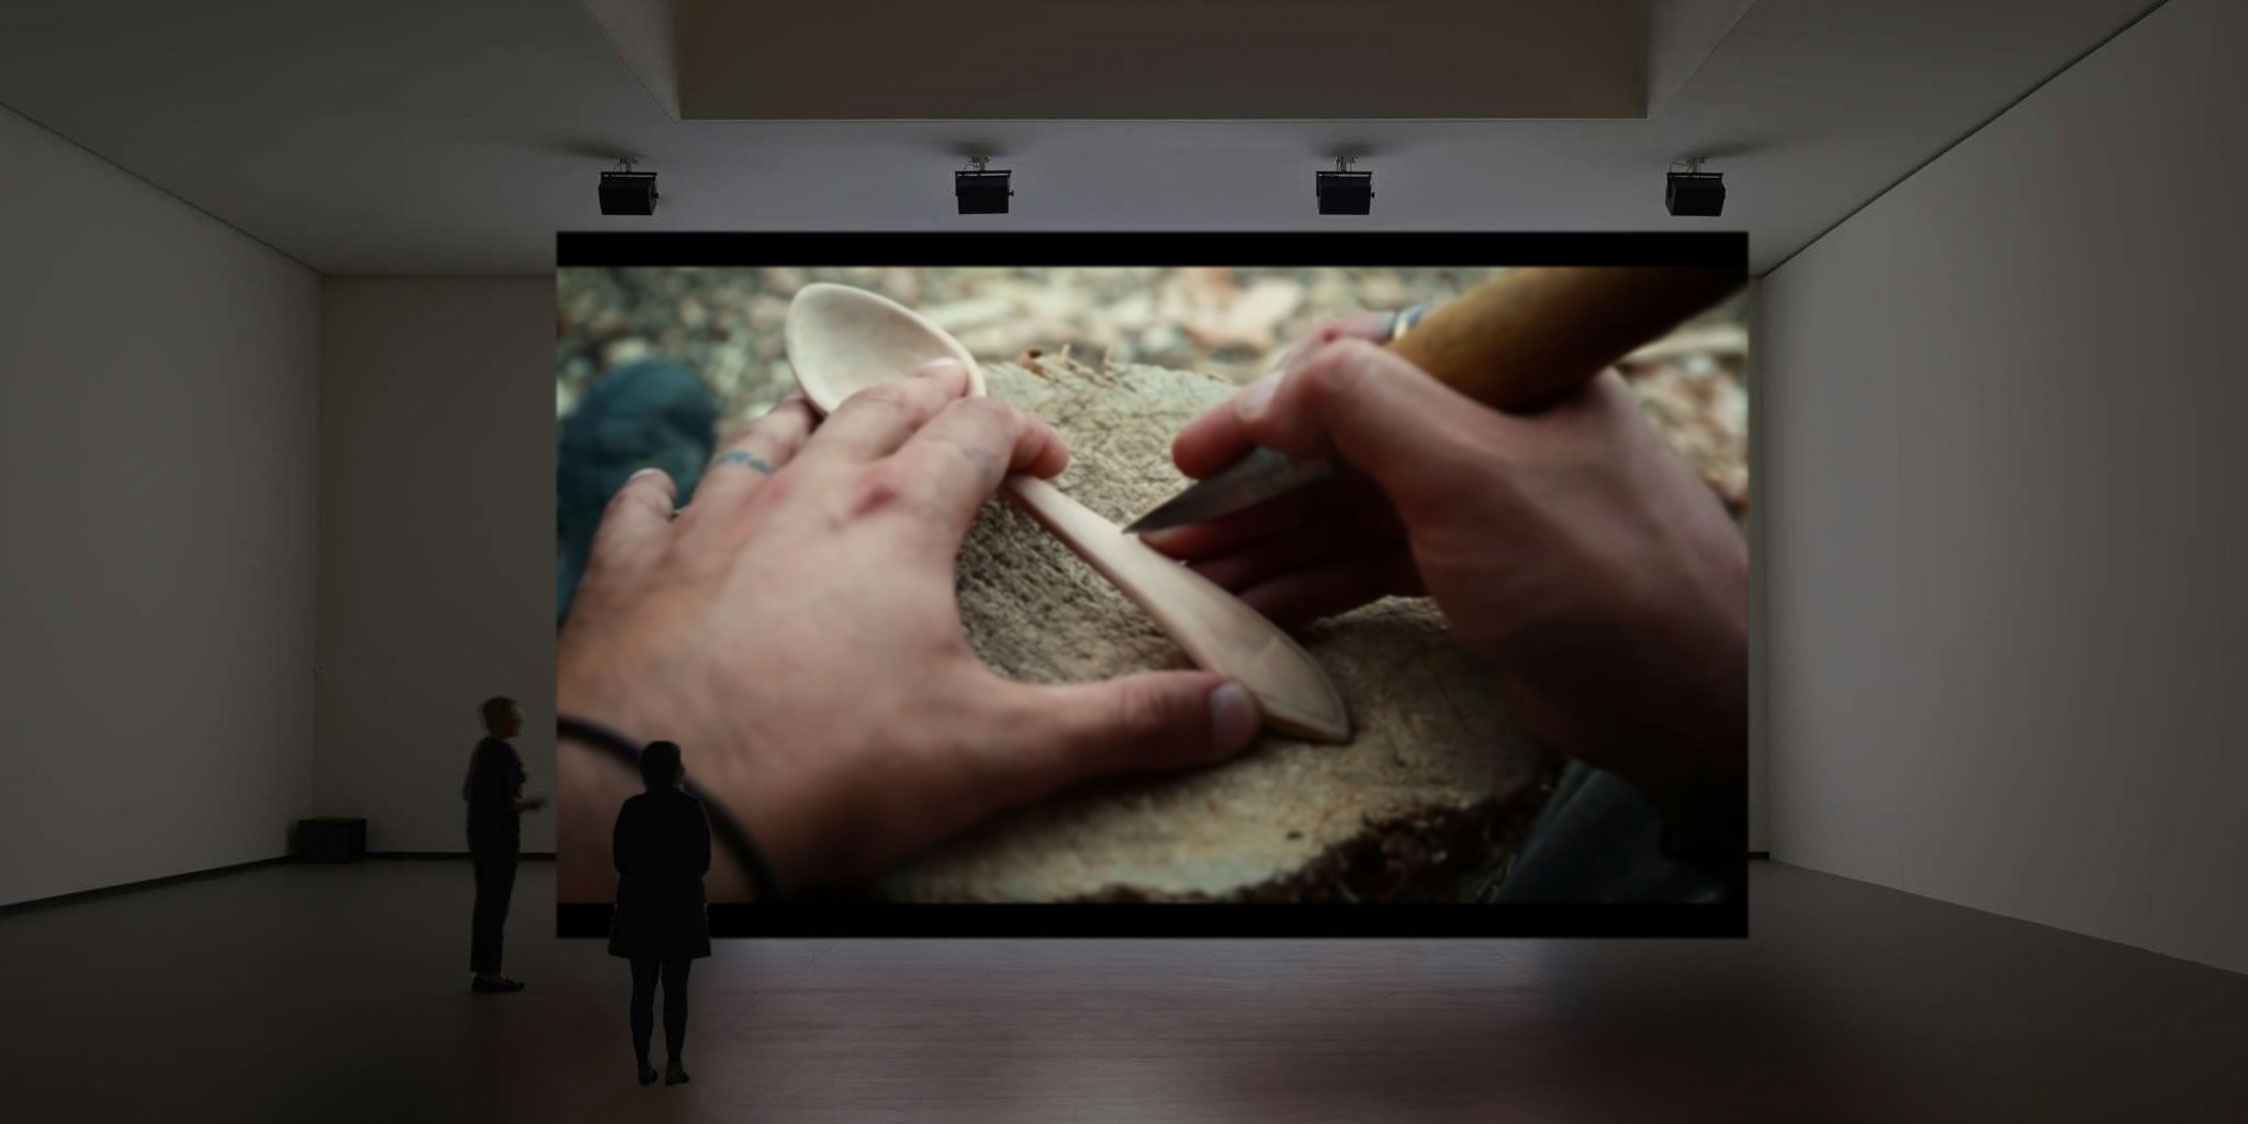 Spoon Fever - Installation vidéo composée de deux projections qui racontent et analysent notre rapport aux objets en mettant en scène un seul et même objet; la cuillère.